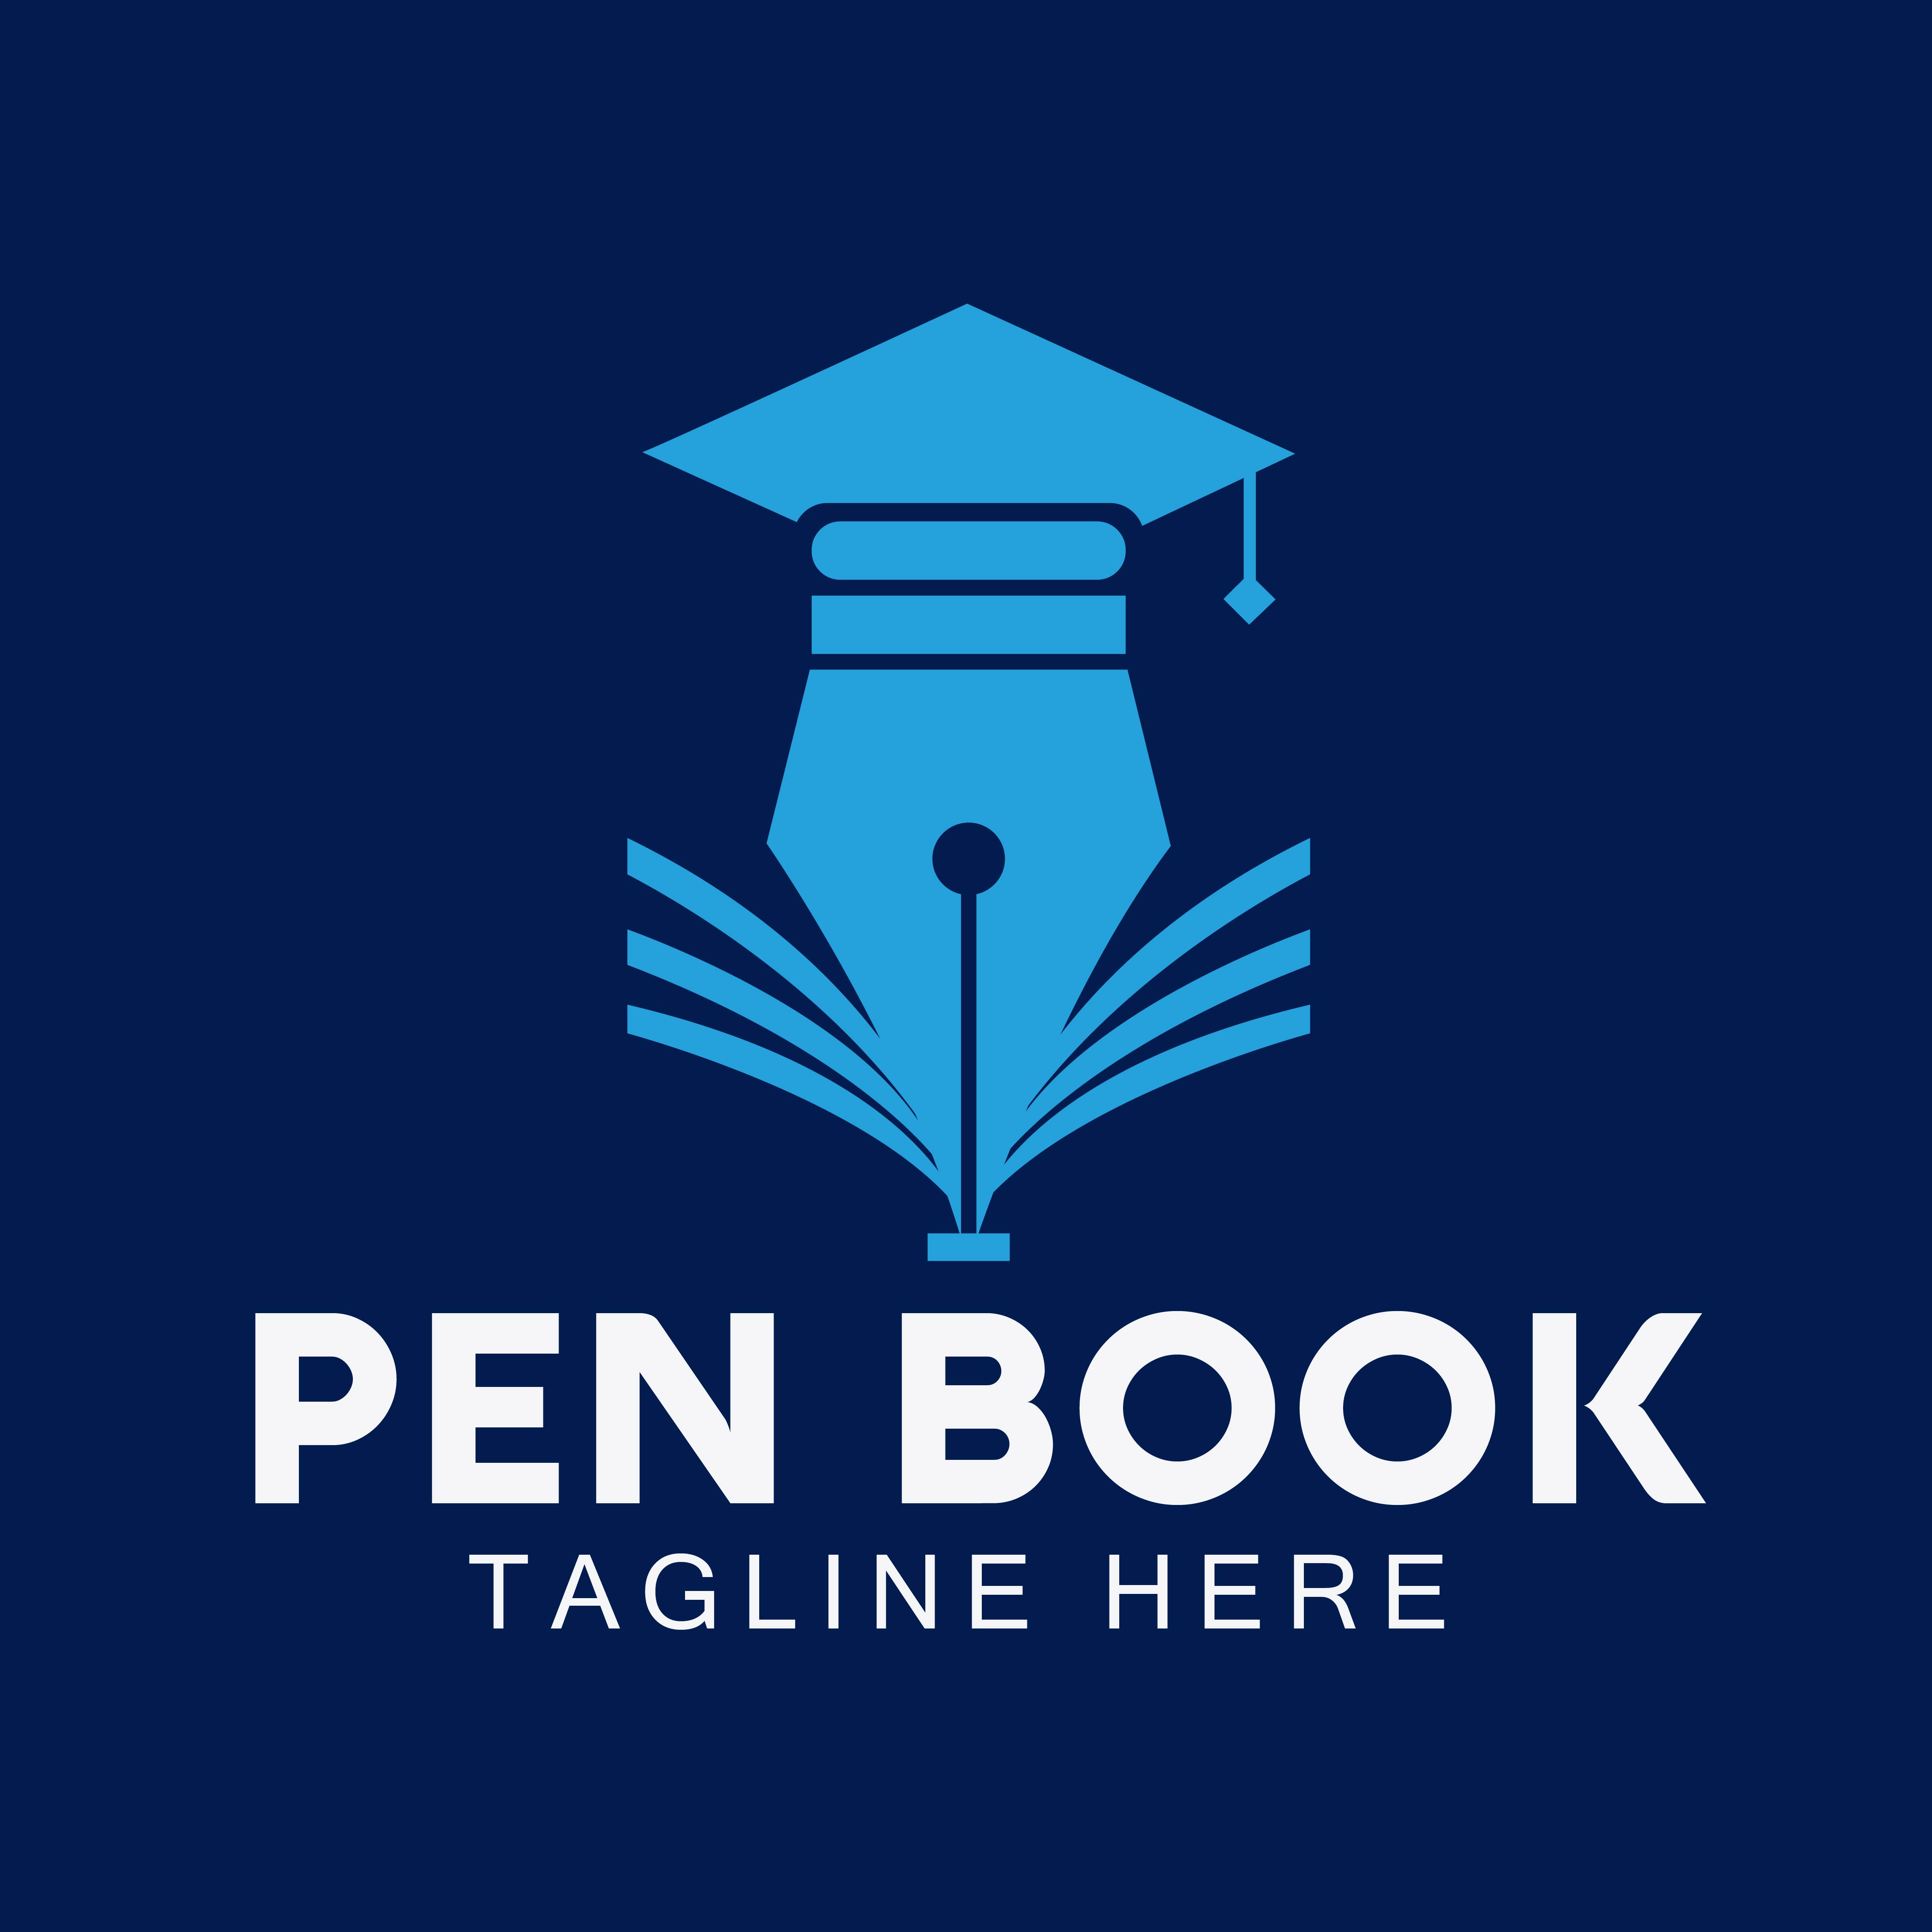 Pen Book Logo Design cover image.